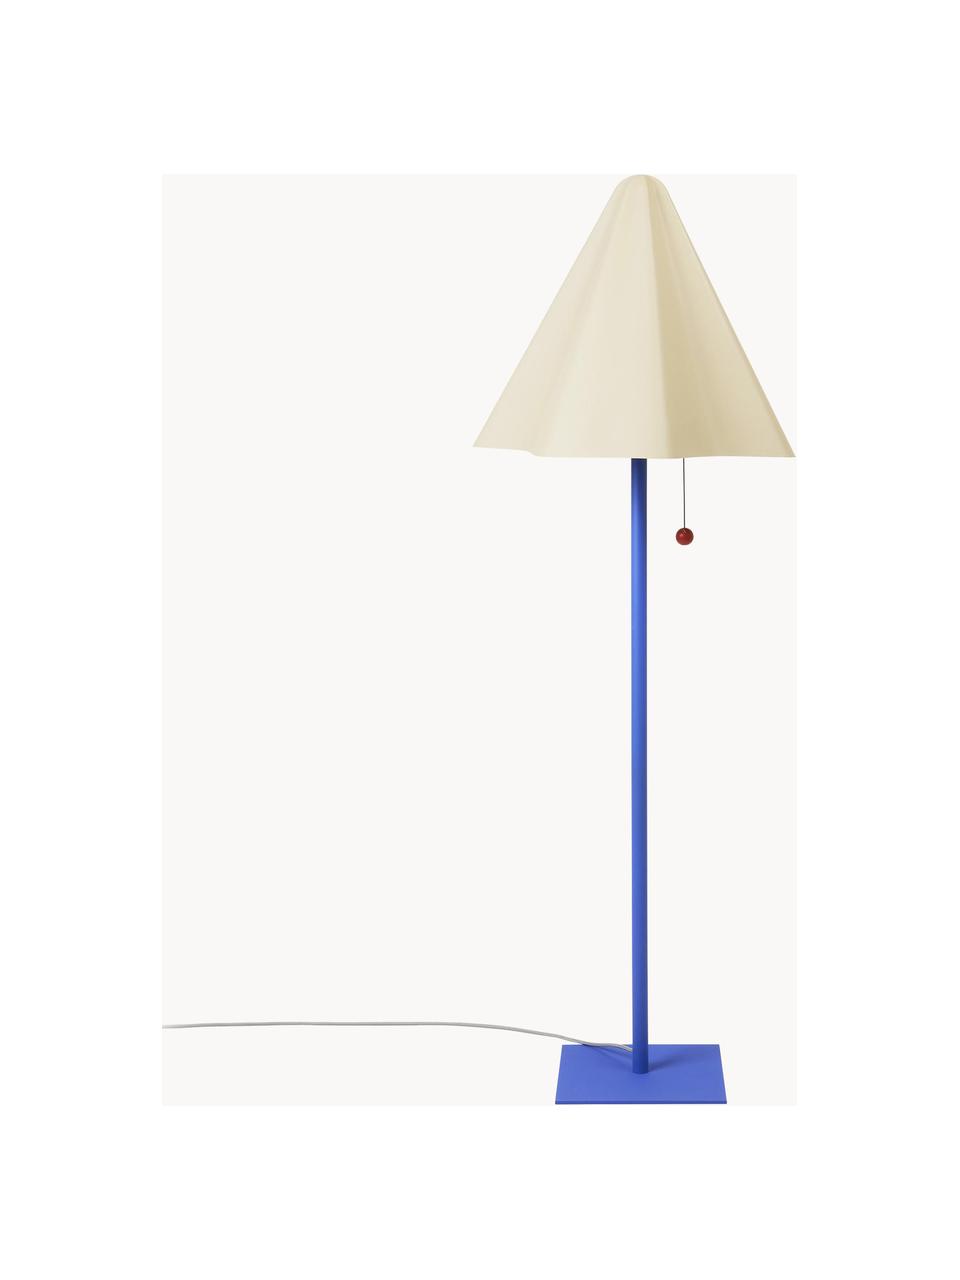 Design stojací lampa Skirt, Krémově bílá, modrá, Ø 44 cm, V 96 cm